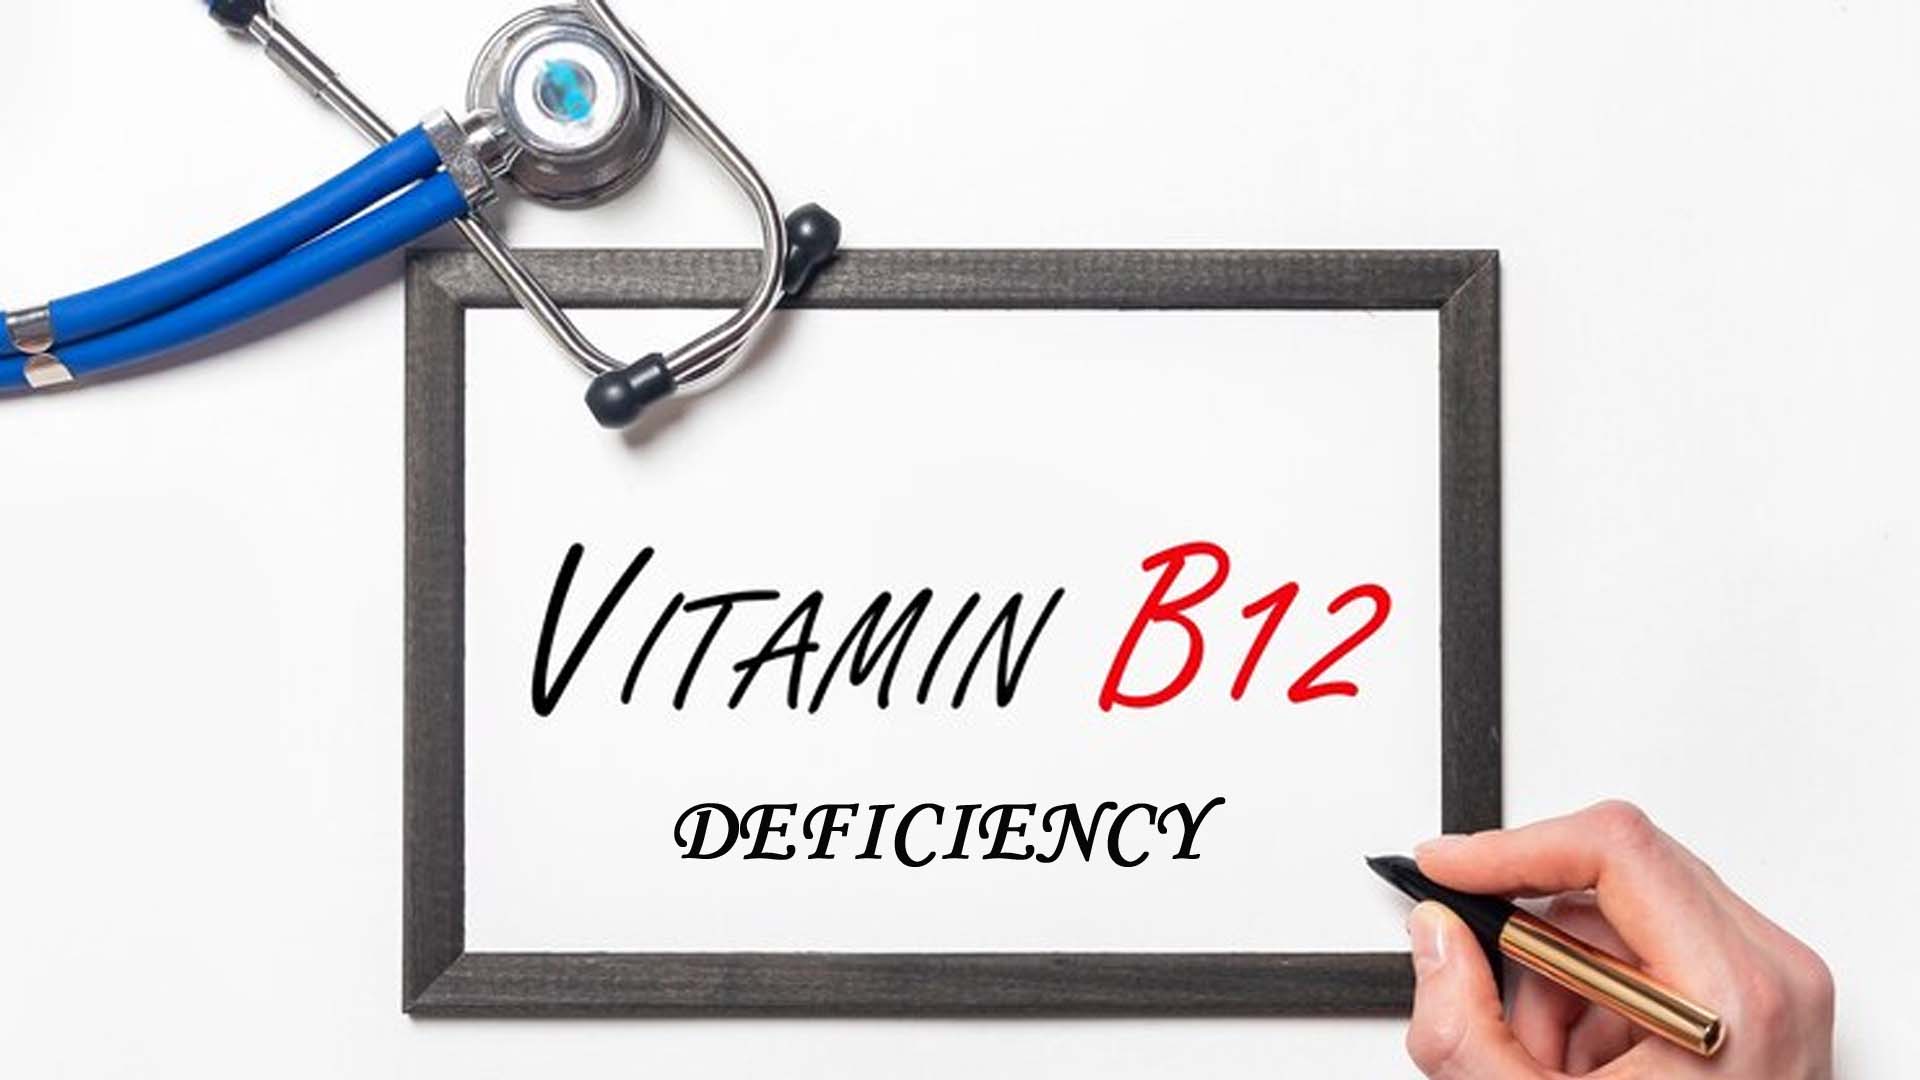 Vitamin B12 Deficiency written on board